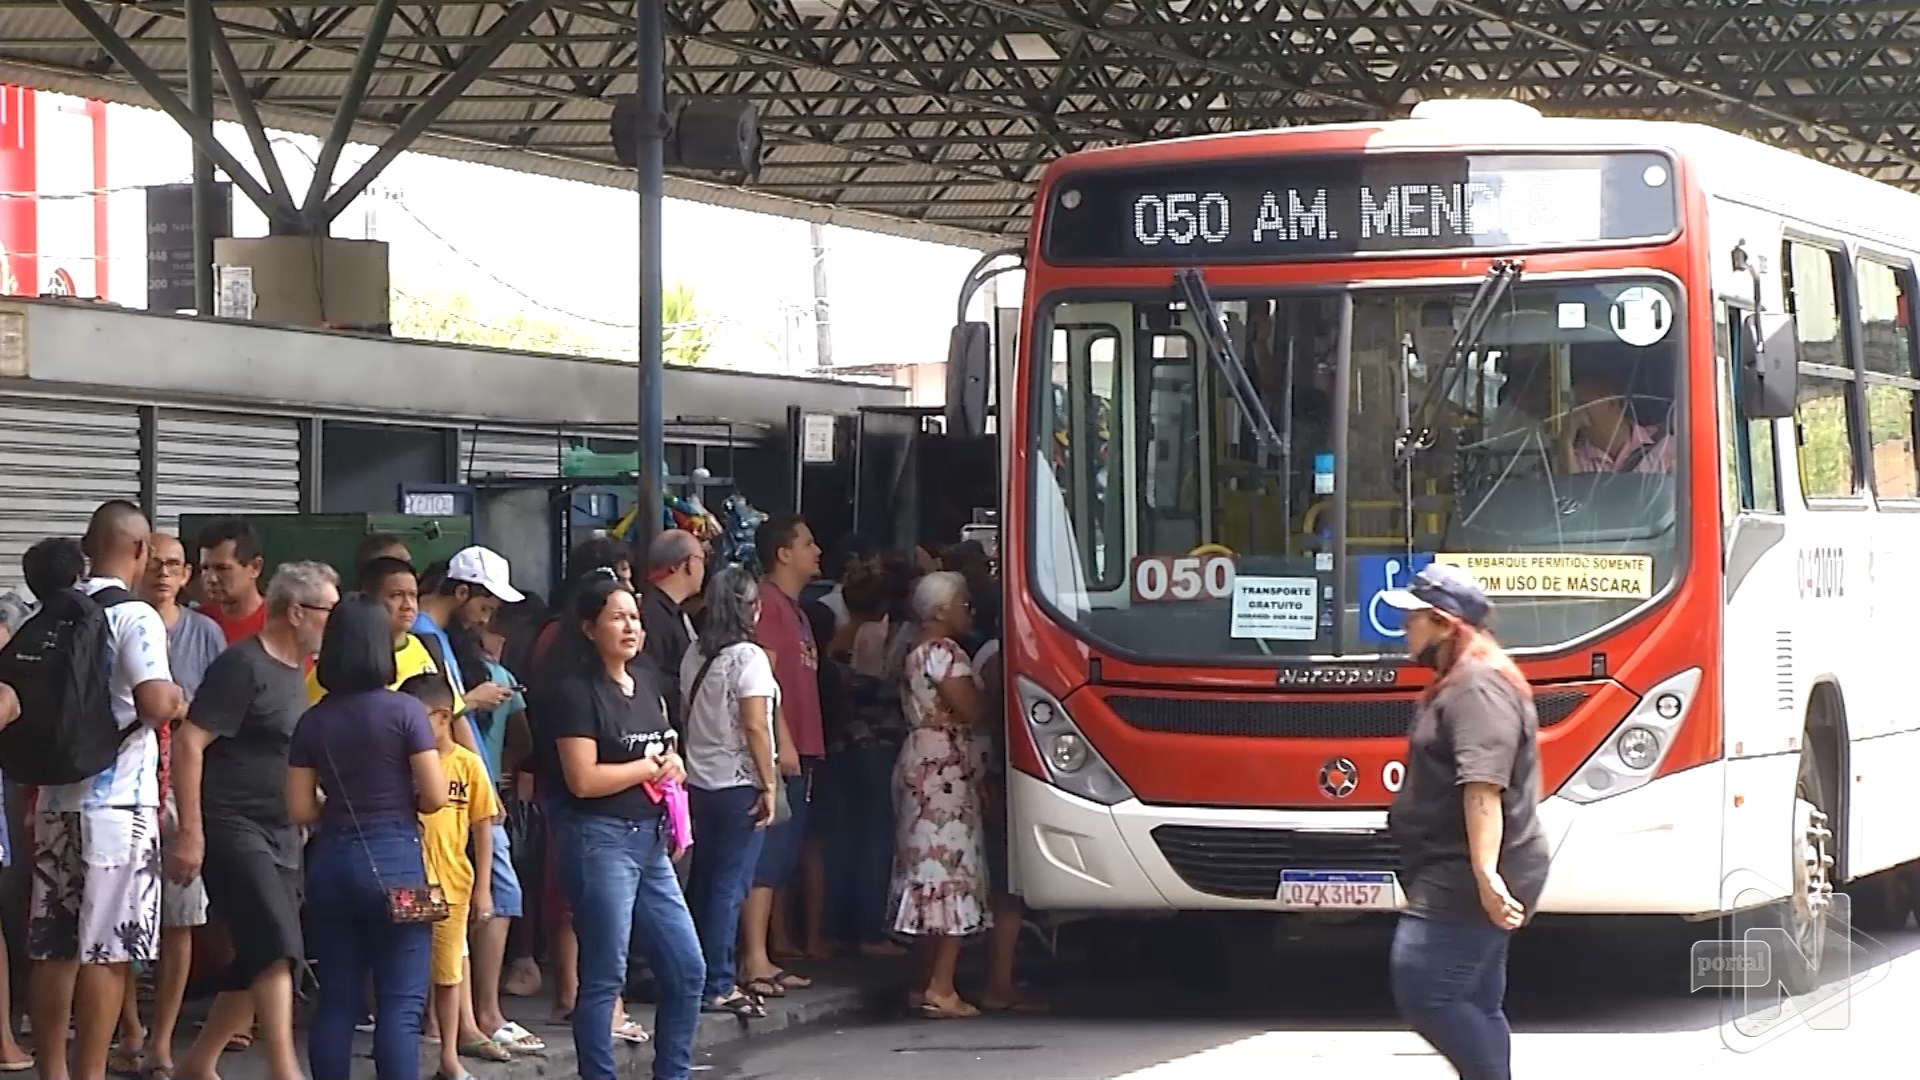 Passagem de ônibus tem preço alterado para R$ 4,50 a partir de domingo. Foto: Reprodução/ TV Norte Amazonas.